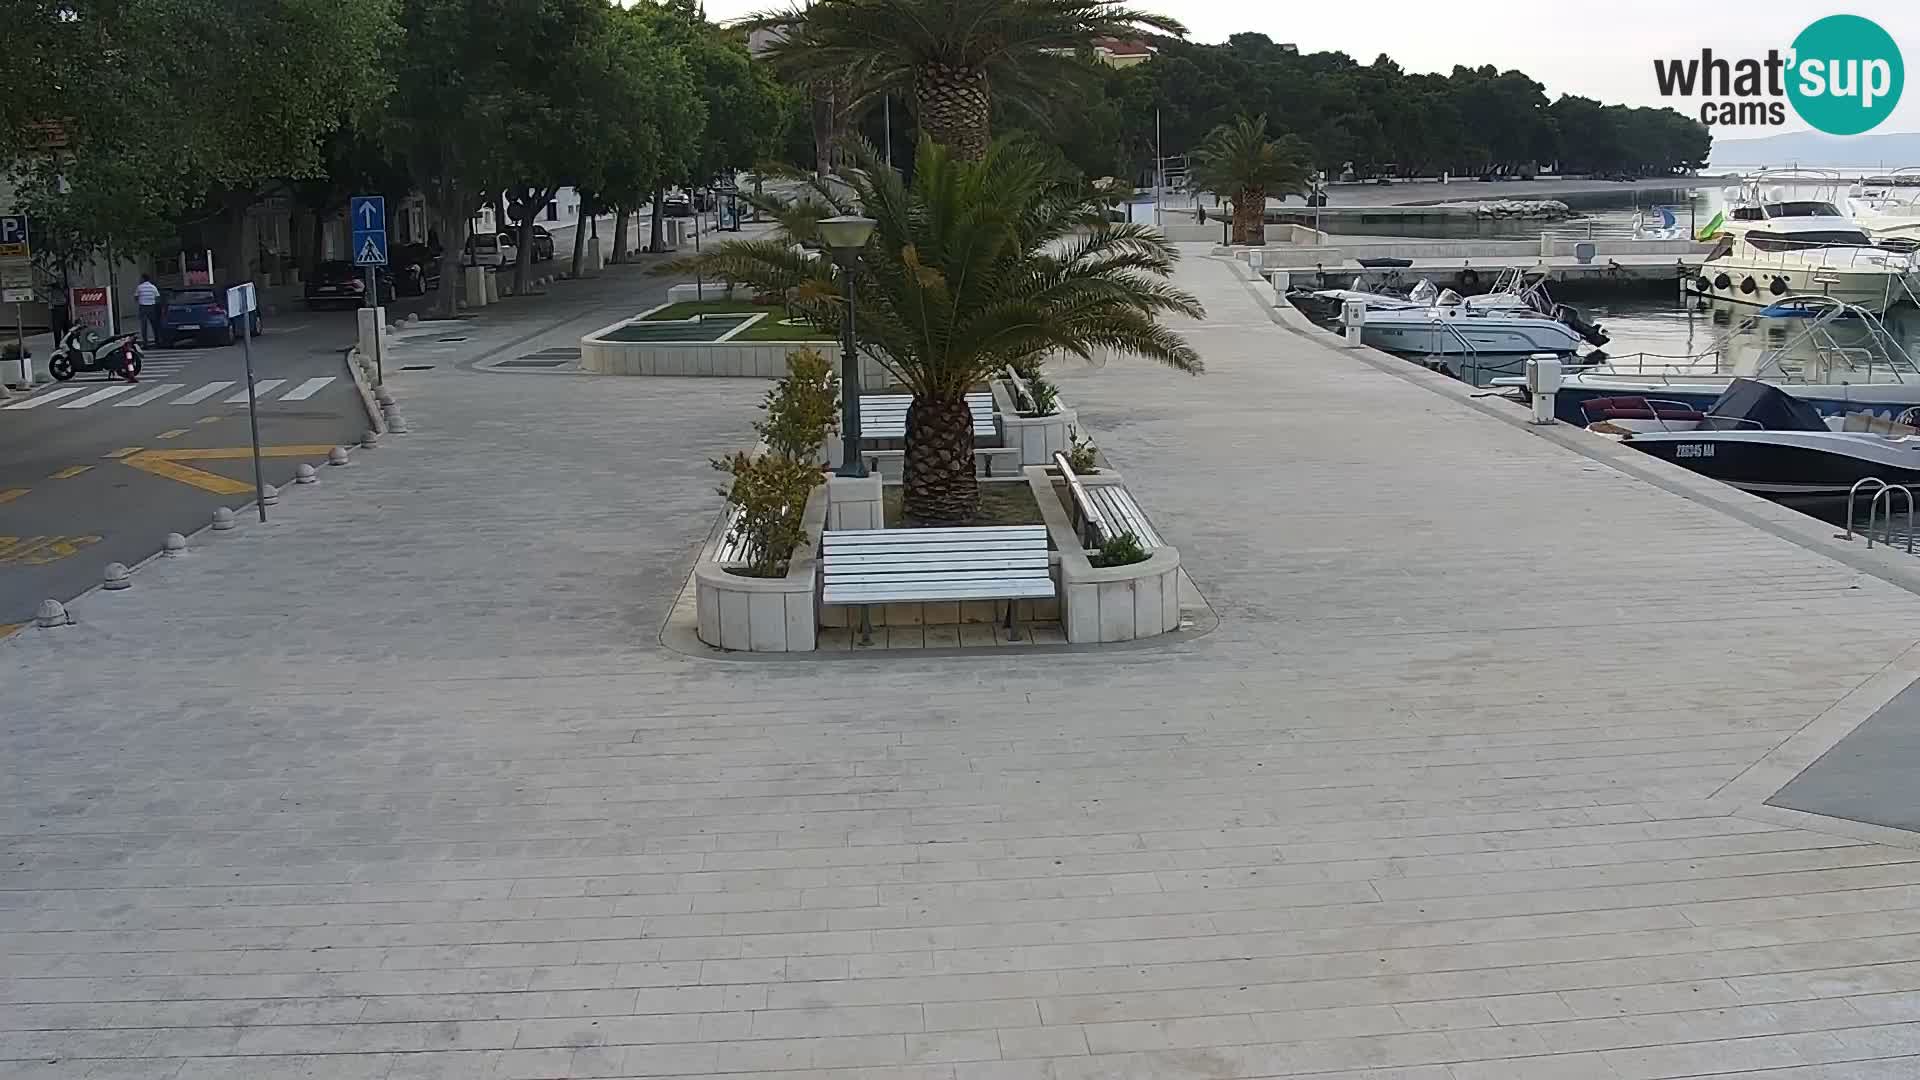 Live webcam Seaside promenade in Baška Voda